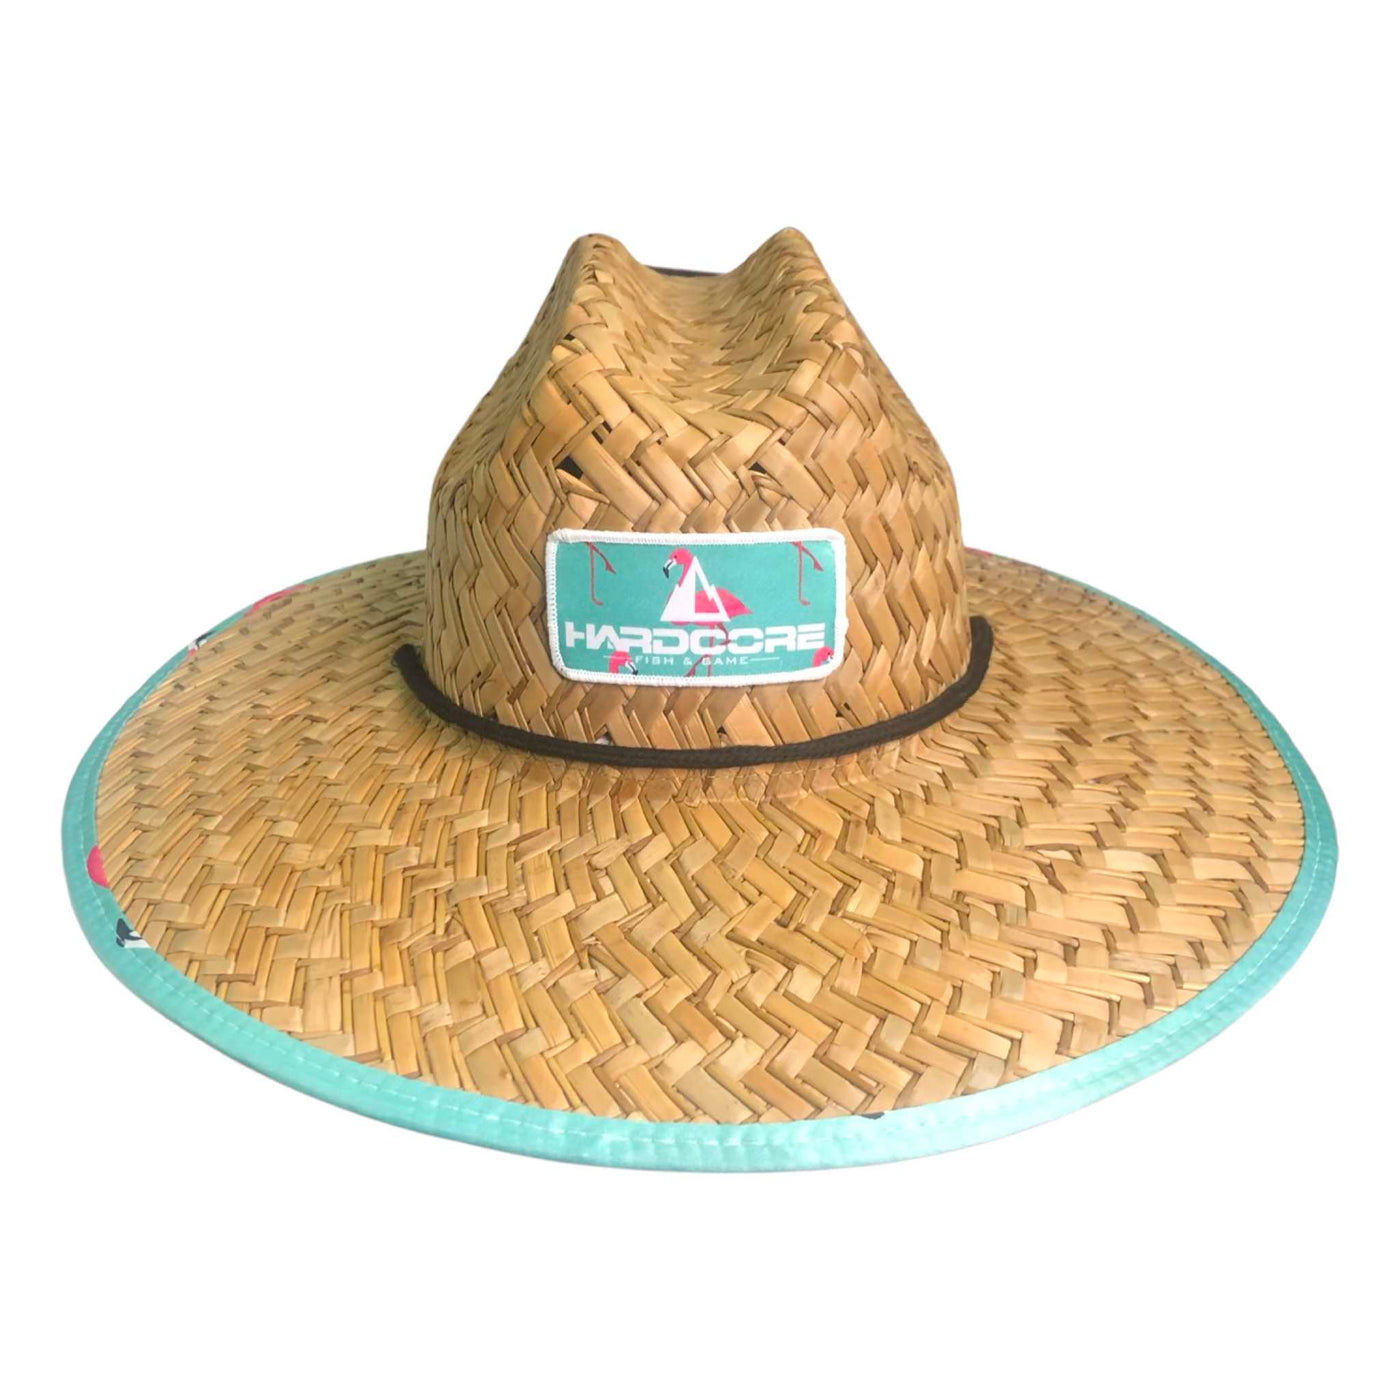 Flamingo Beach Straw Hat